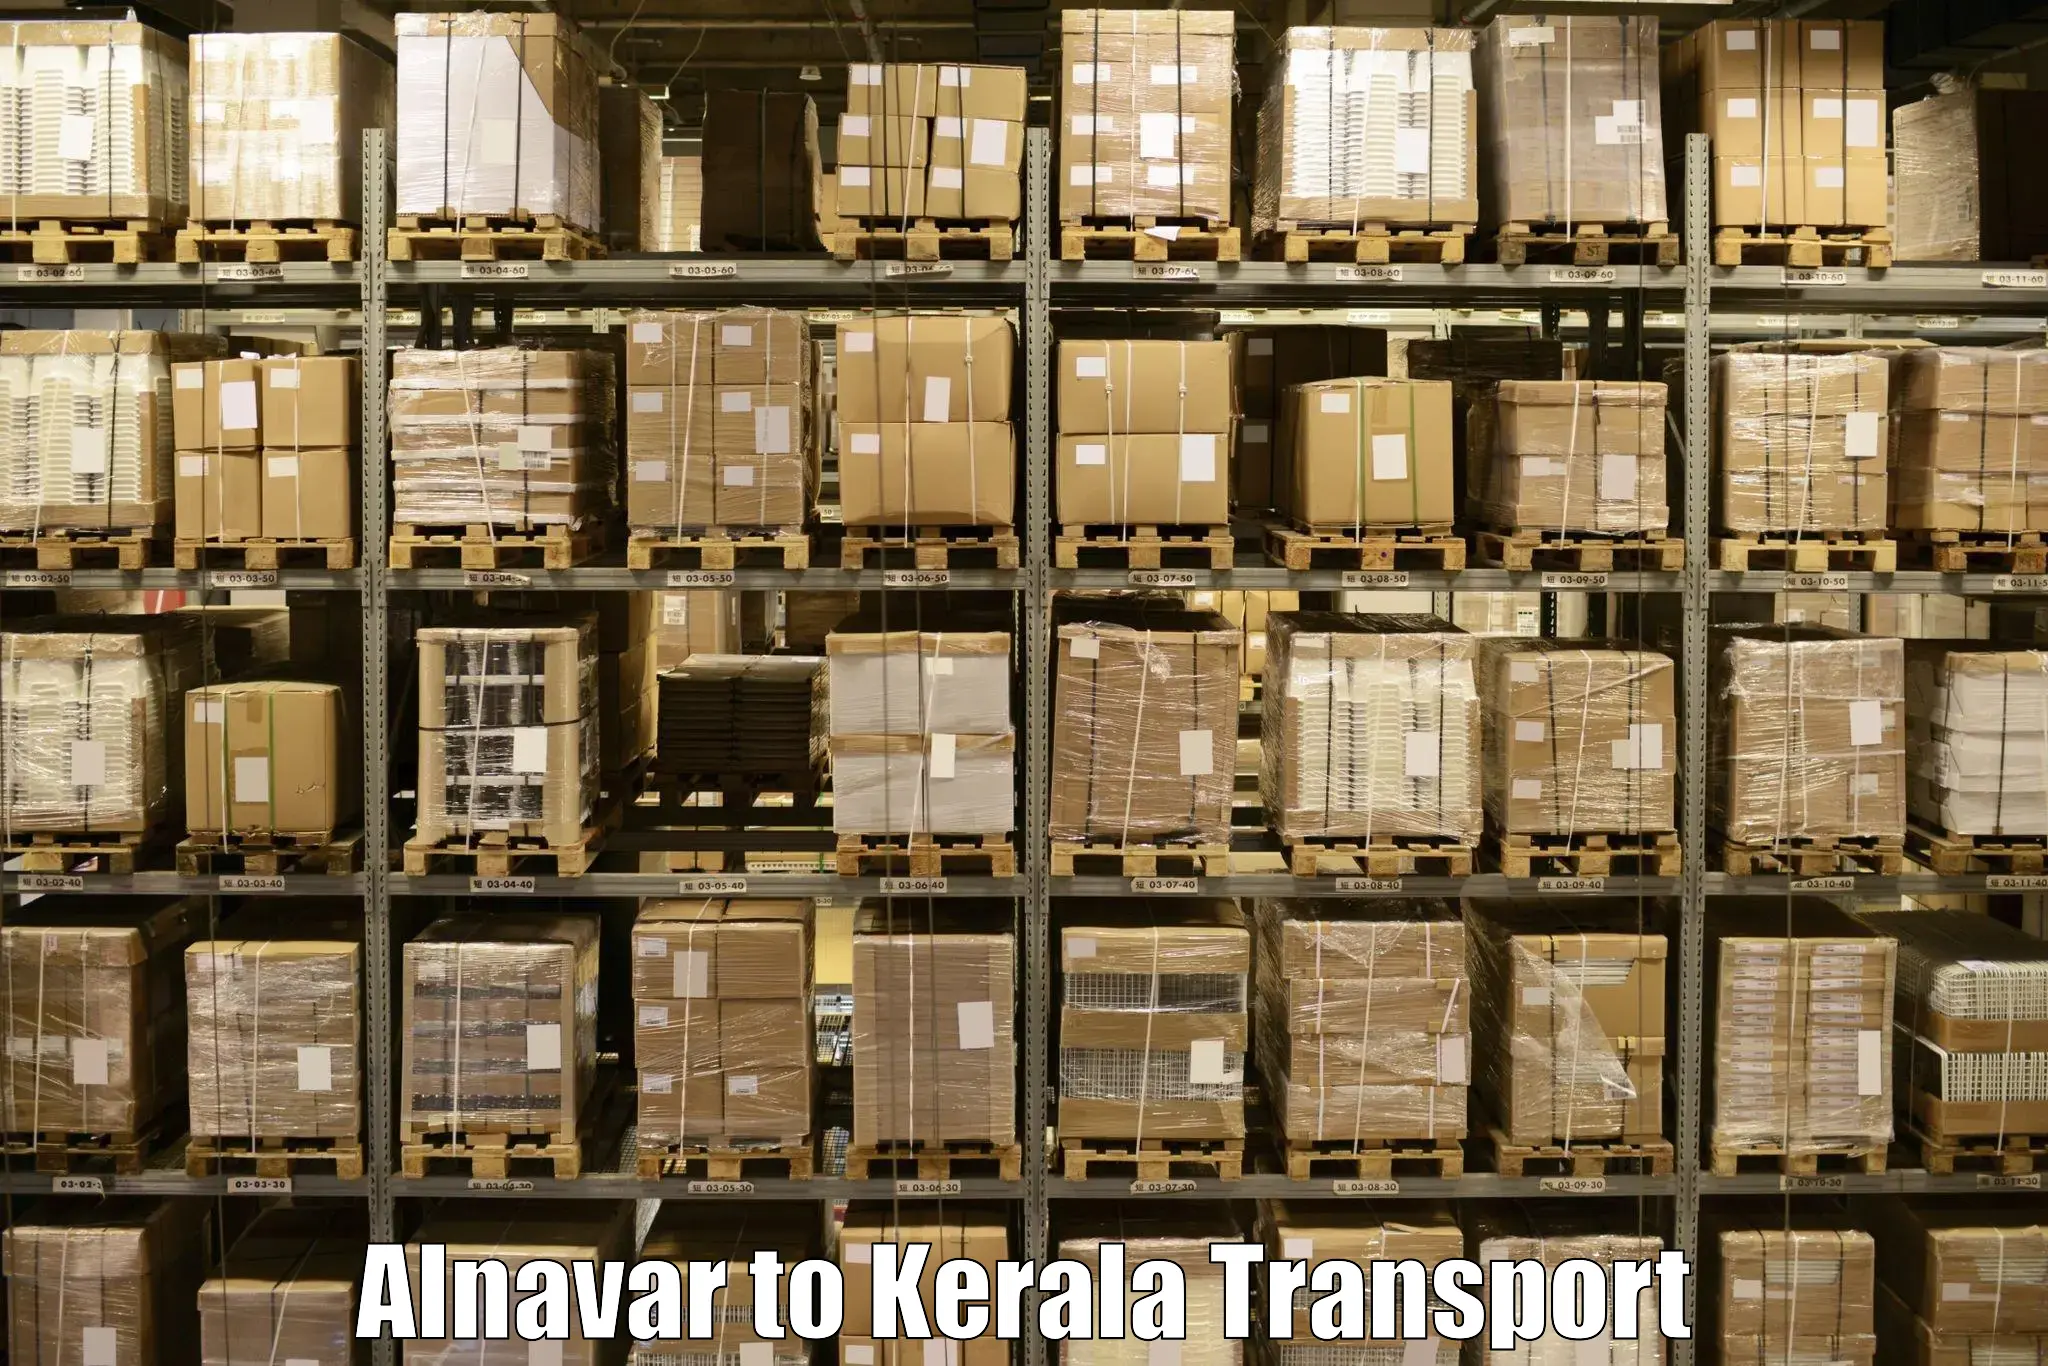 Land transport services Alnavar to Kilimanoor